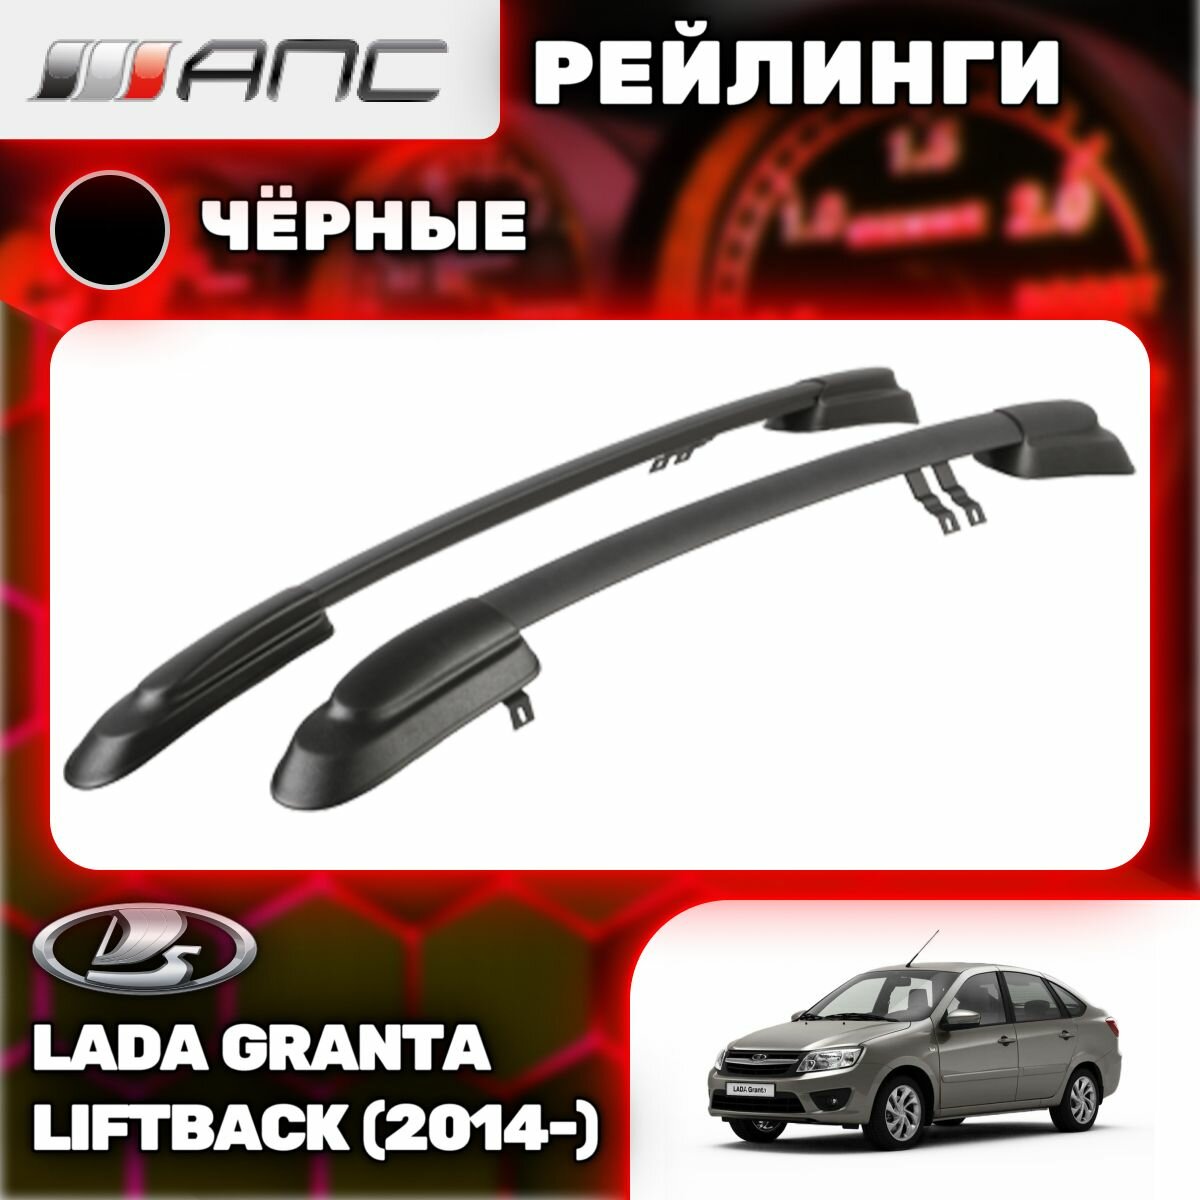 Рейлинги АПС для Lada Granta Liftback (2014-) (Лада Гранта Лифтбек) черные 0229-БП-02